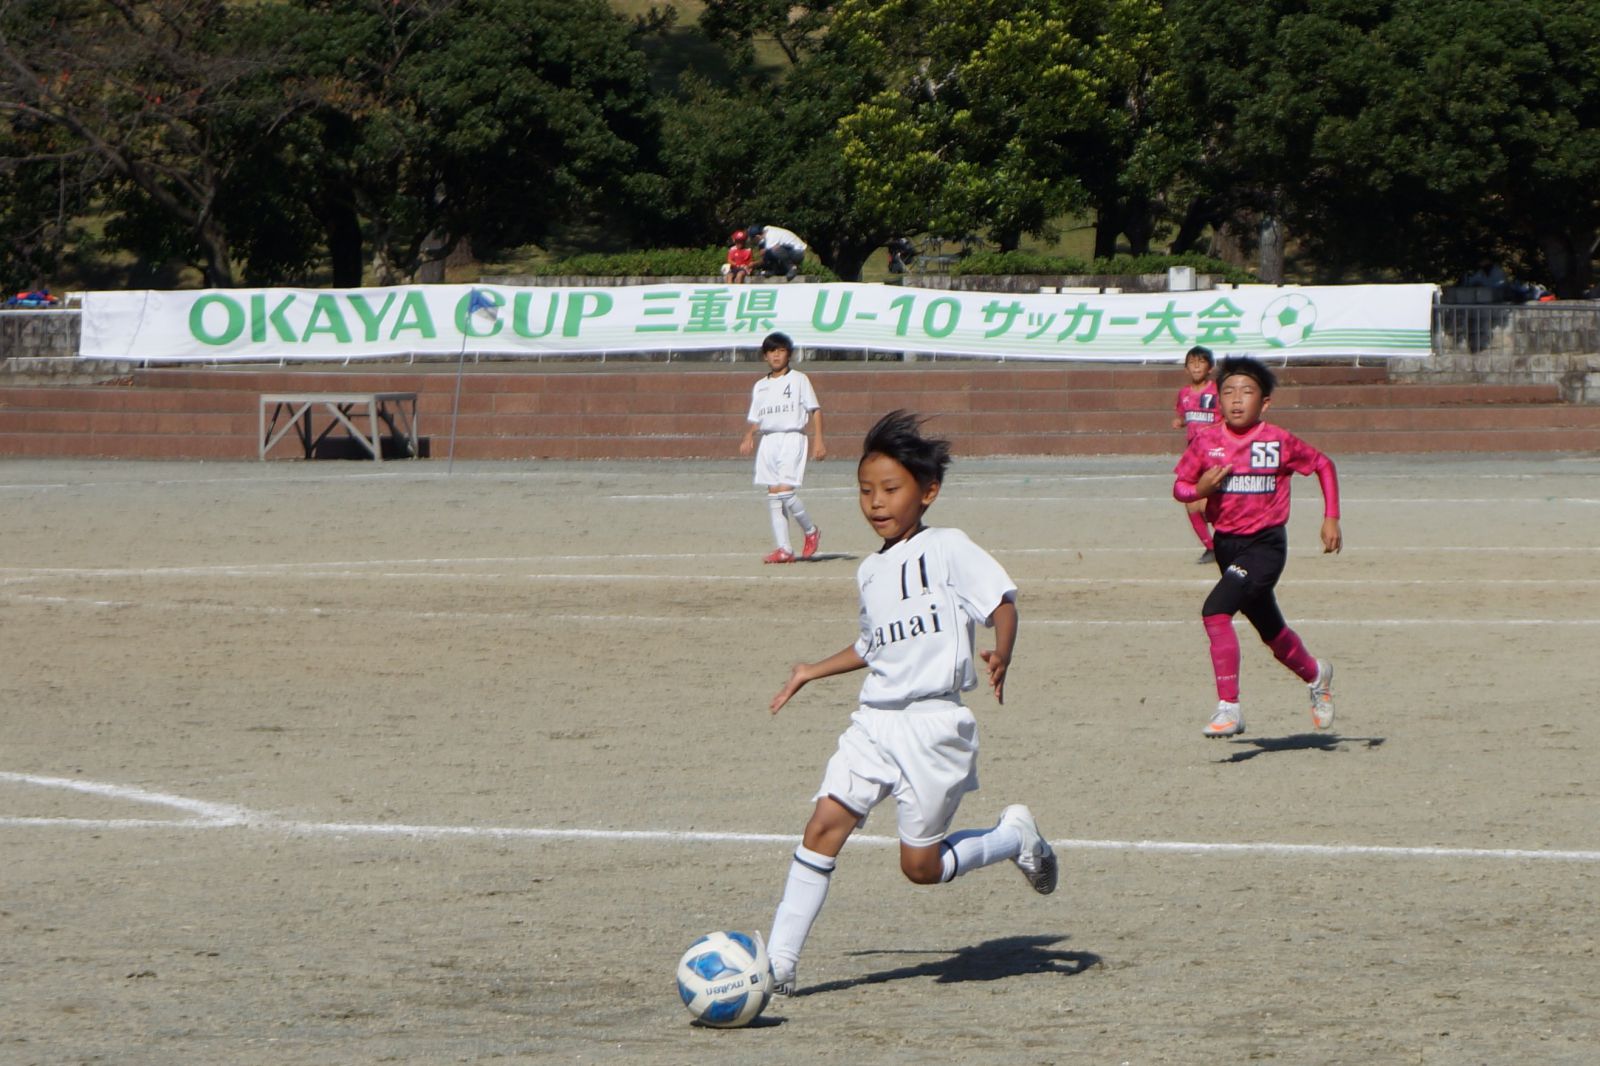 第1回 Okaya Cup 三重県 少年 少女 U 10 サッカー大会が開催されました 岡谷鋼機株式会社